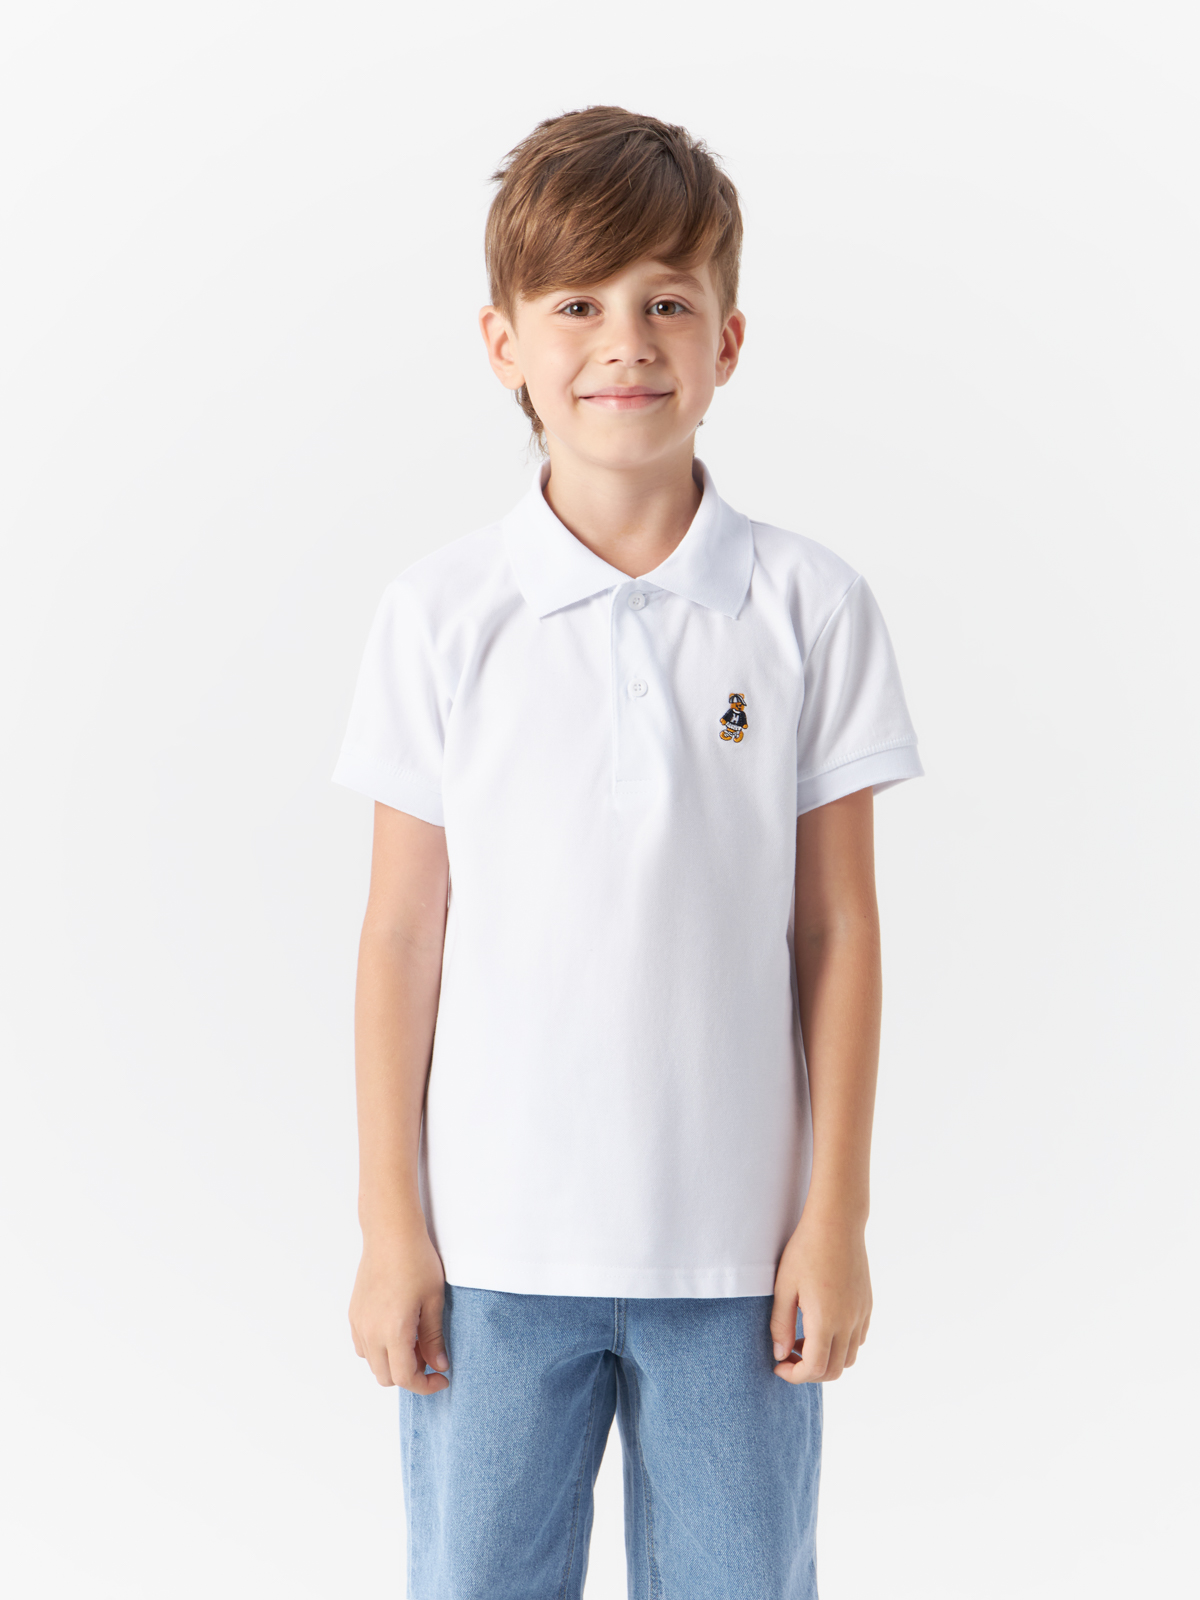 Рубашка-поло Yiwu Xflot Supply Chain детская, с коротким рукавом, BS-12, размер 130 см